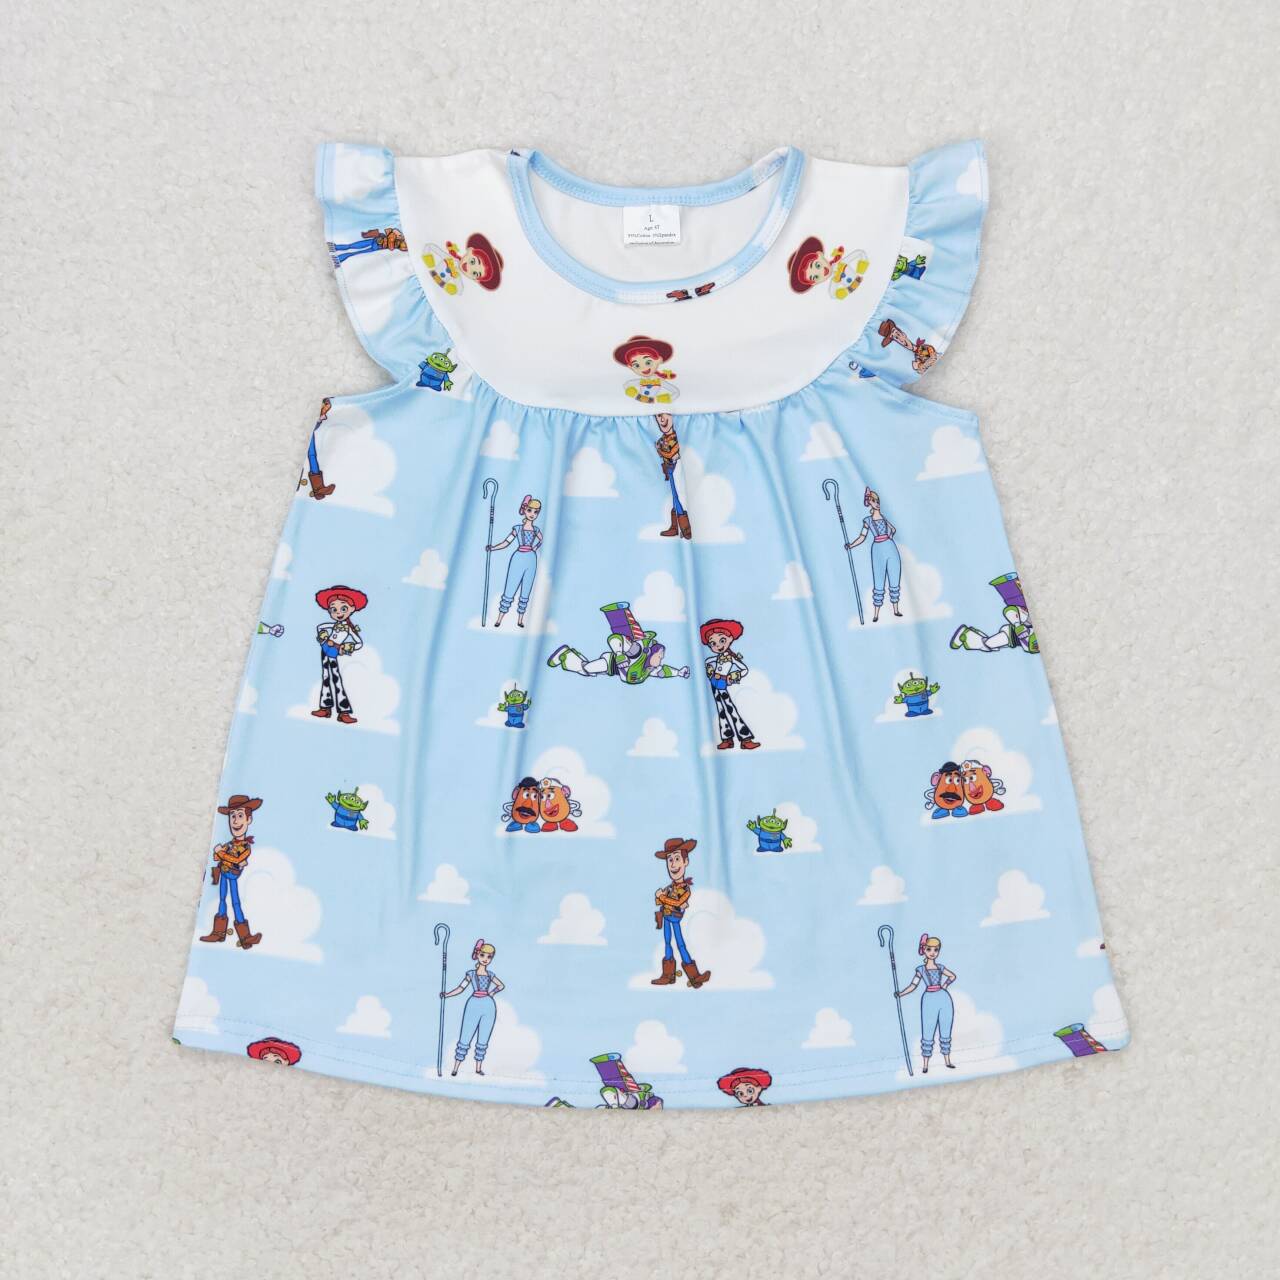 GT0592 Blue Cartoon Toys Print Girls Summer Tee Shirts Top